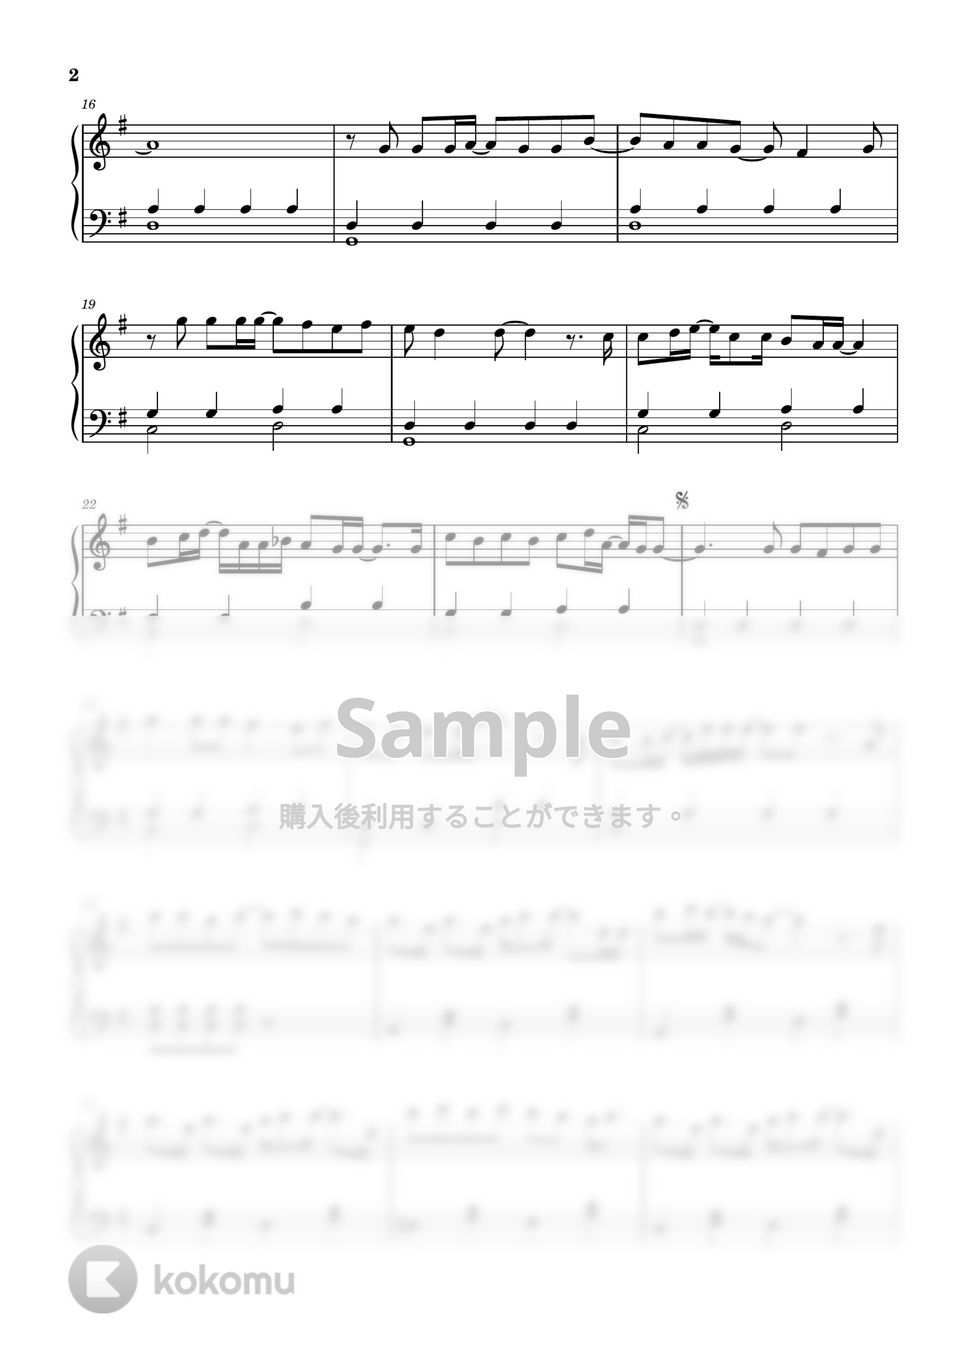 あいみょん - 君はロックを聴かない (ピアノ中級ソロ) by pianon